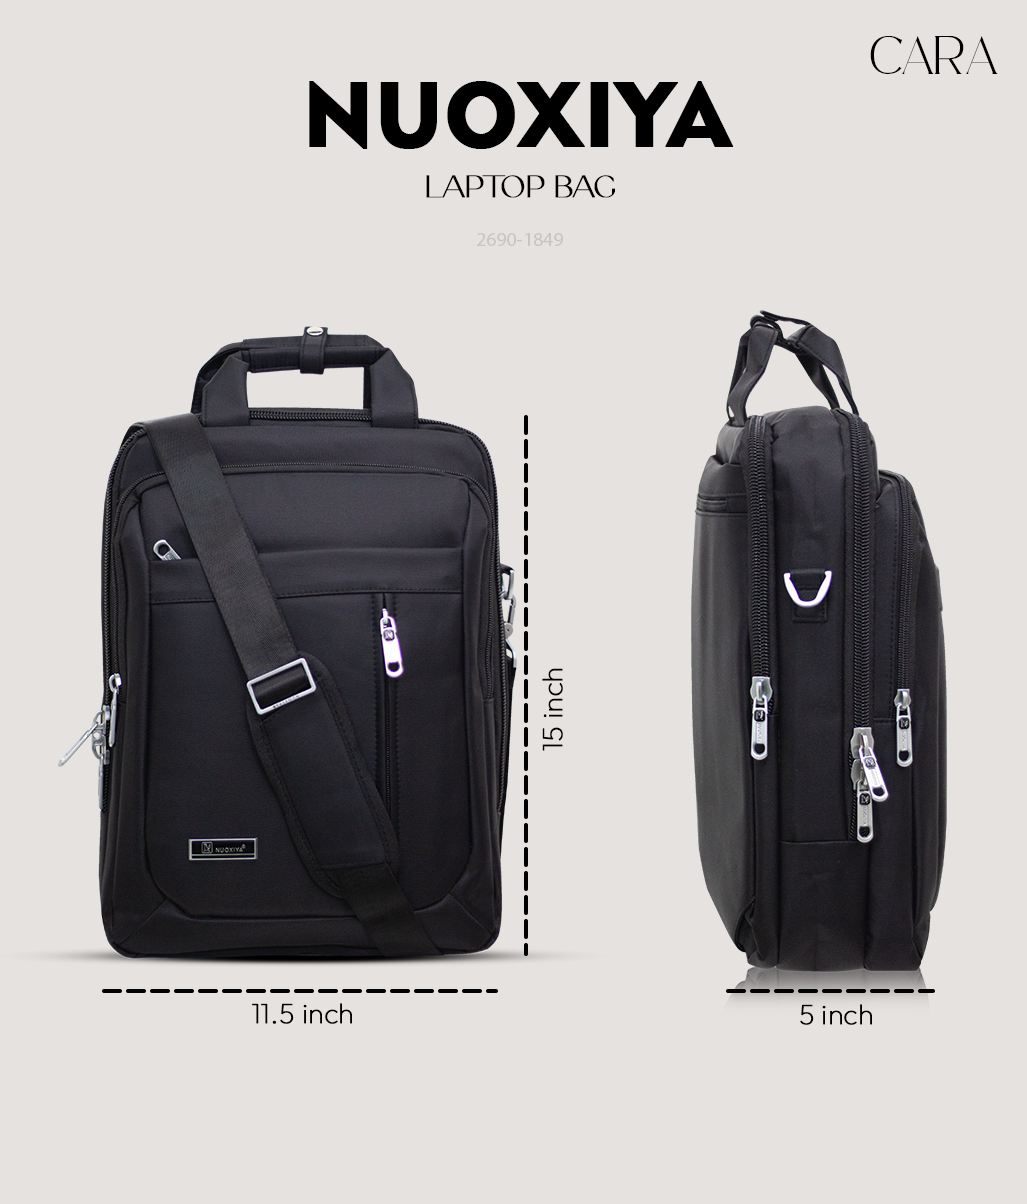 Nuoxiya laptop bag